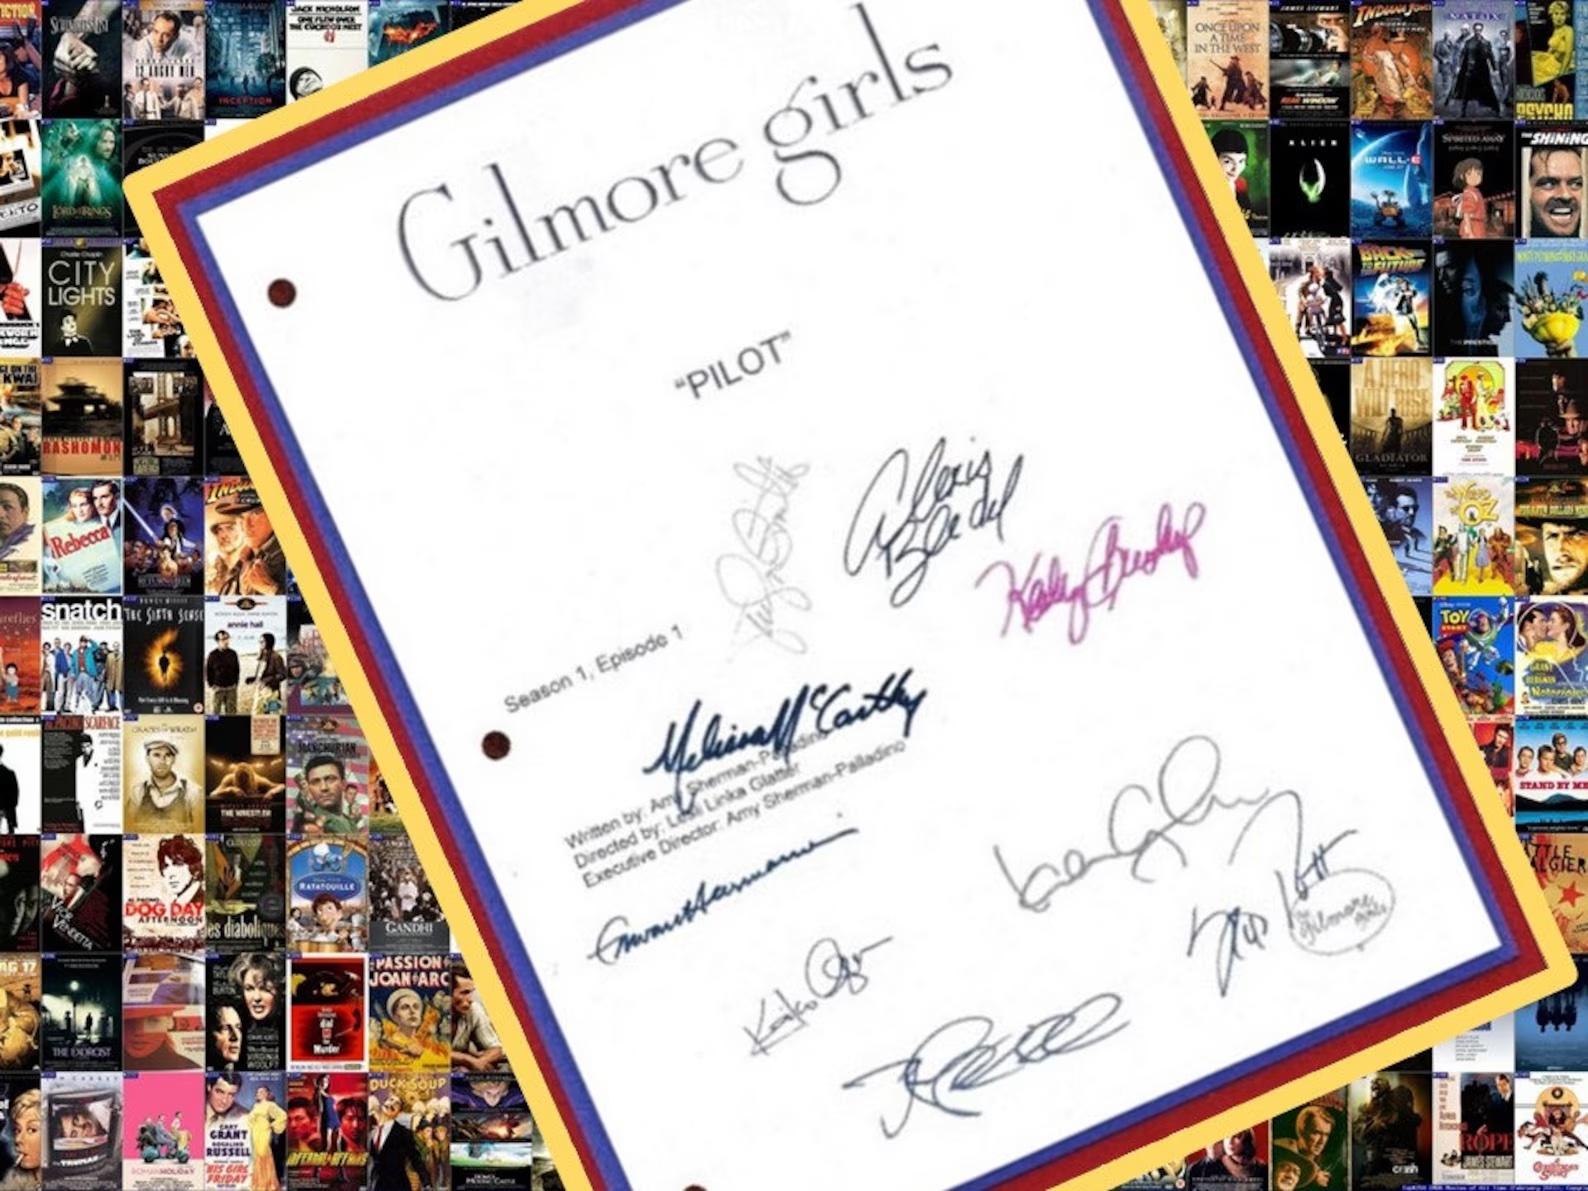 underskrevet kopi af manuskriptet til piloten af ​​Gilmore Girls